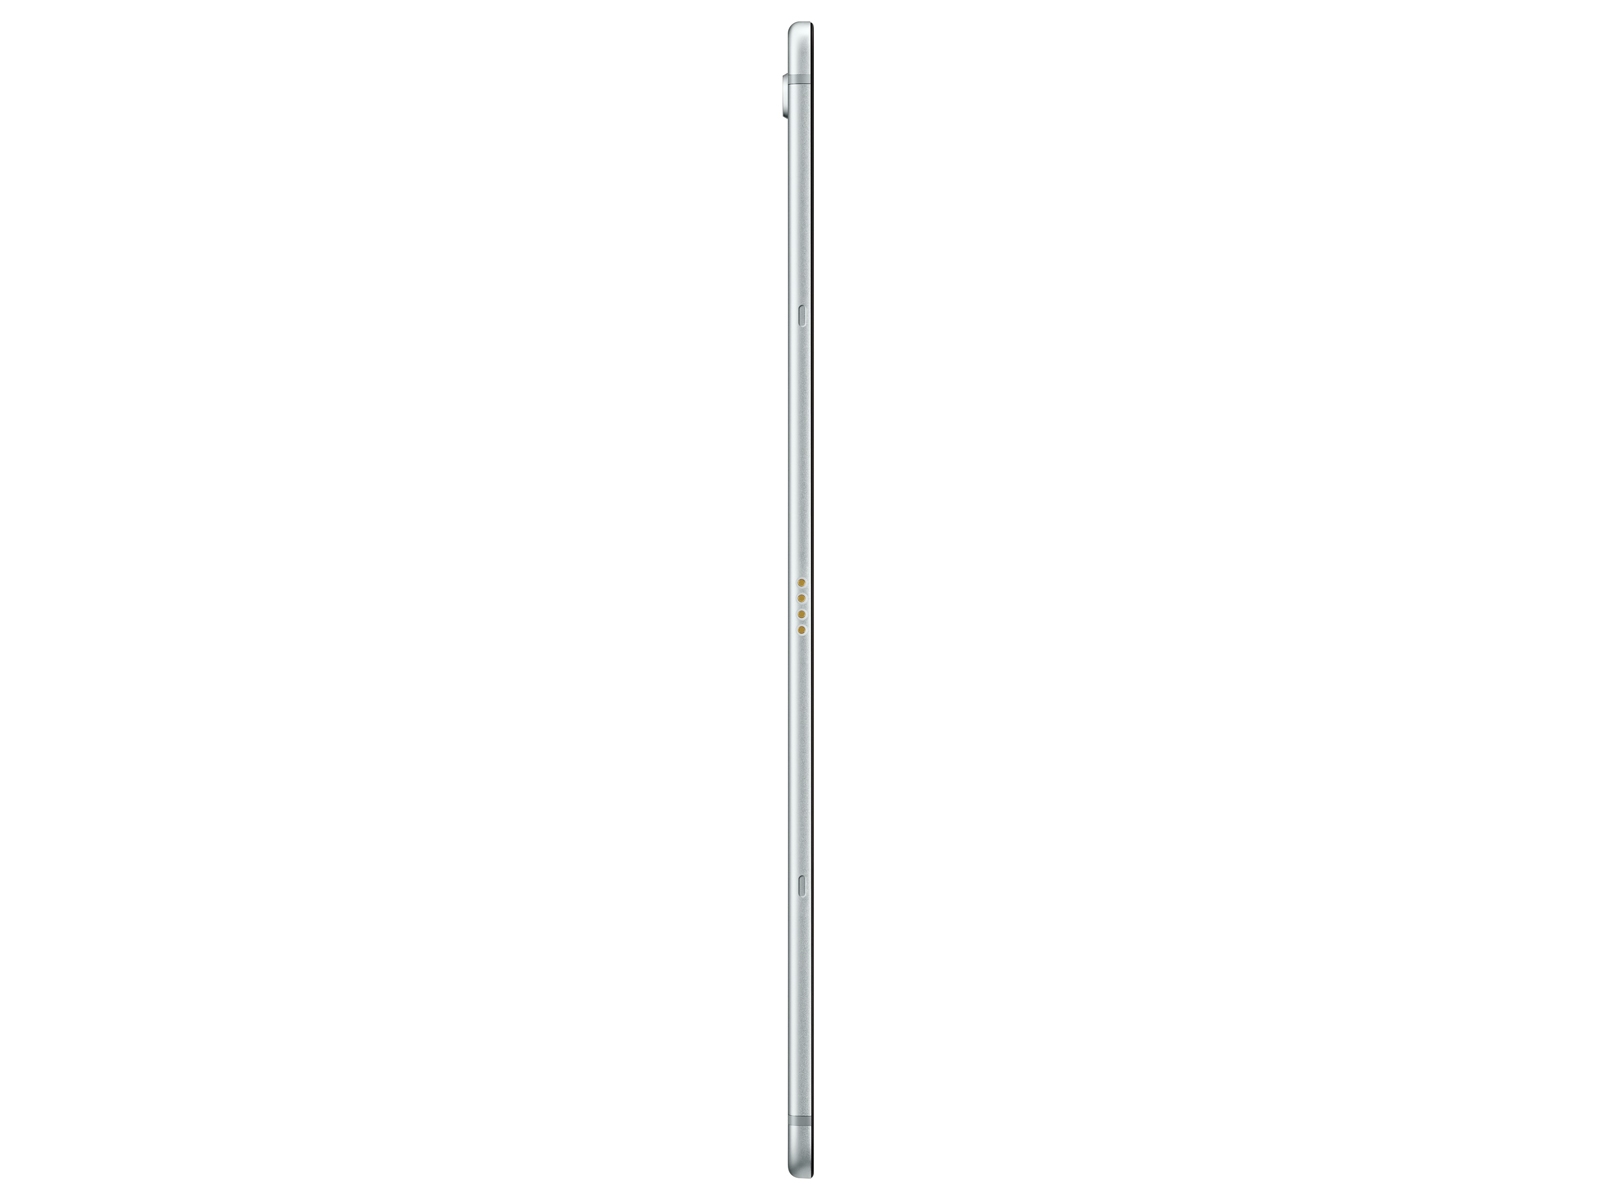 Thumbnail image of Galaxy Tab S5e 10.5”, 64GB, Silver (Verizon)